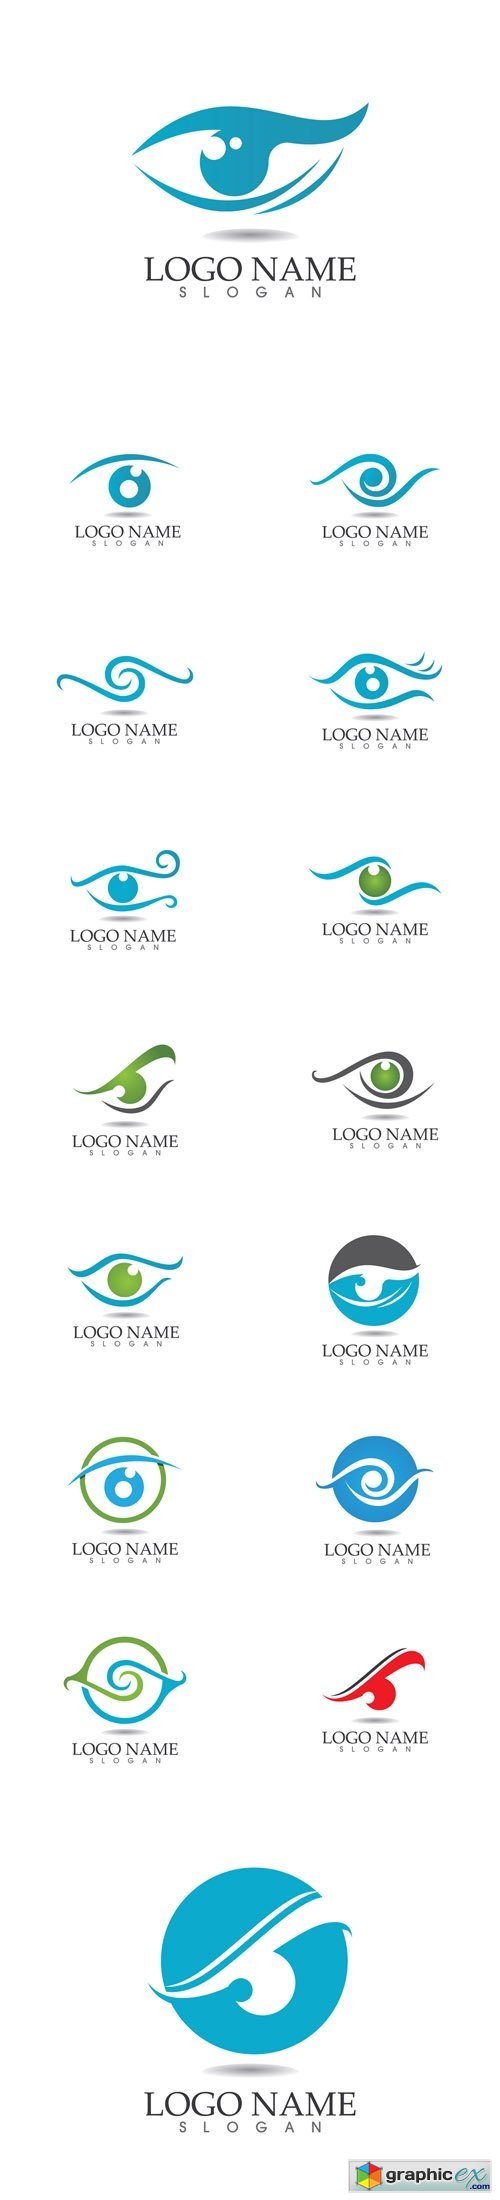 Eye Care Logos